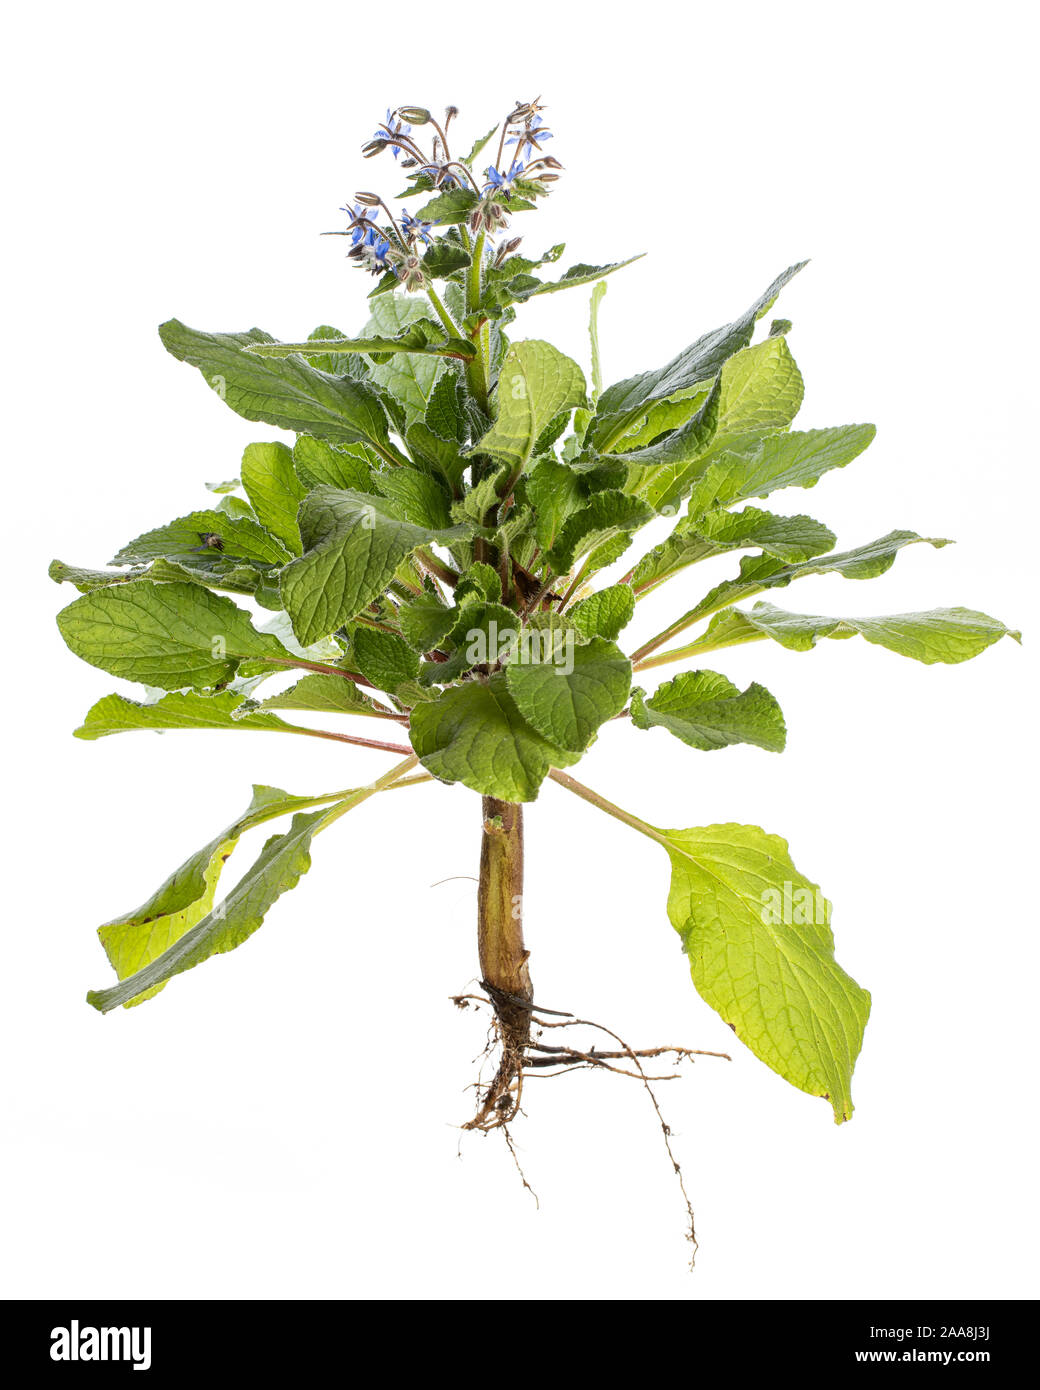 Pianta medicinale isolato su sfondo bianco: borragine o Starflower (borragine officinalis) tutta la fioritura di piante con stelo, foglie, fiori e radici Foto Stock